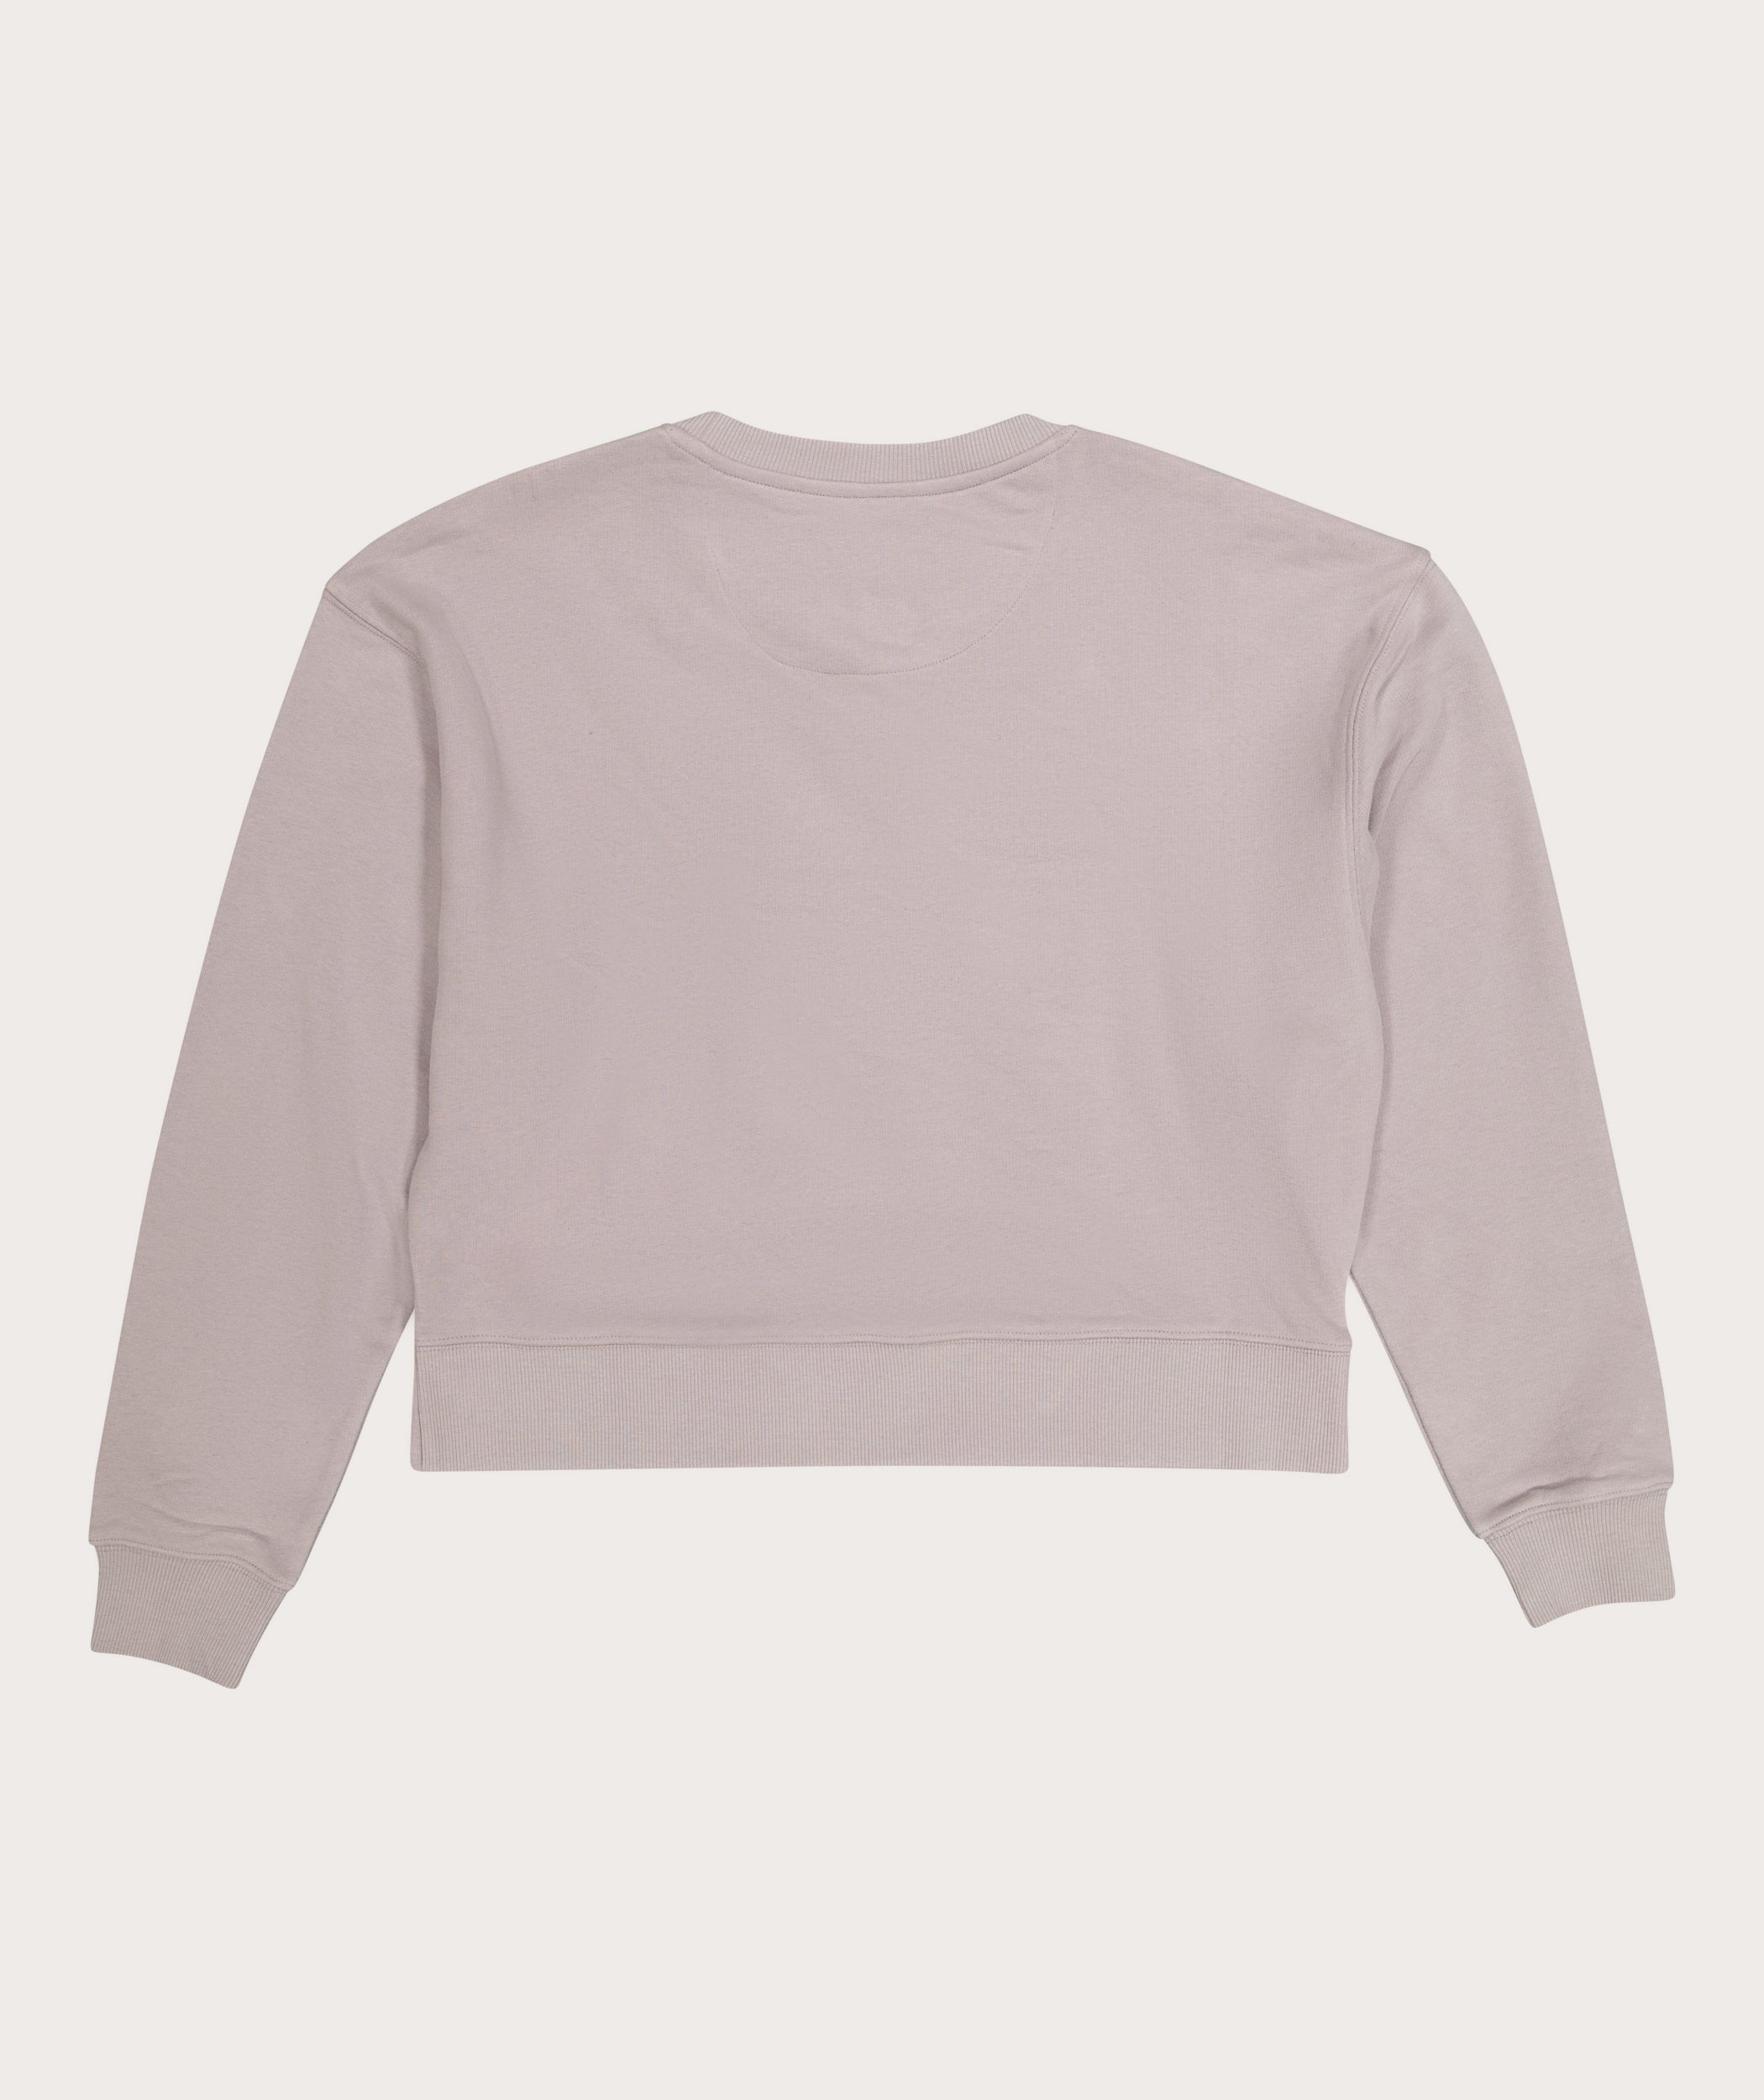 Ladies Crew Neck Sweater - Lilac